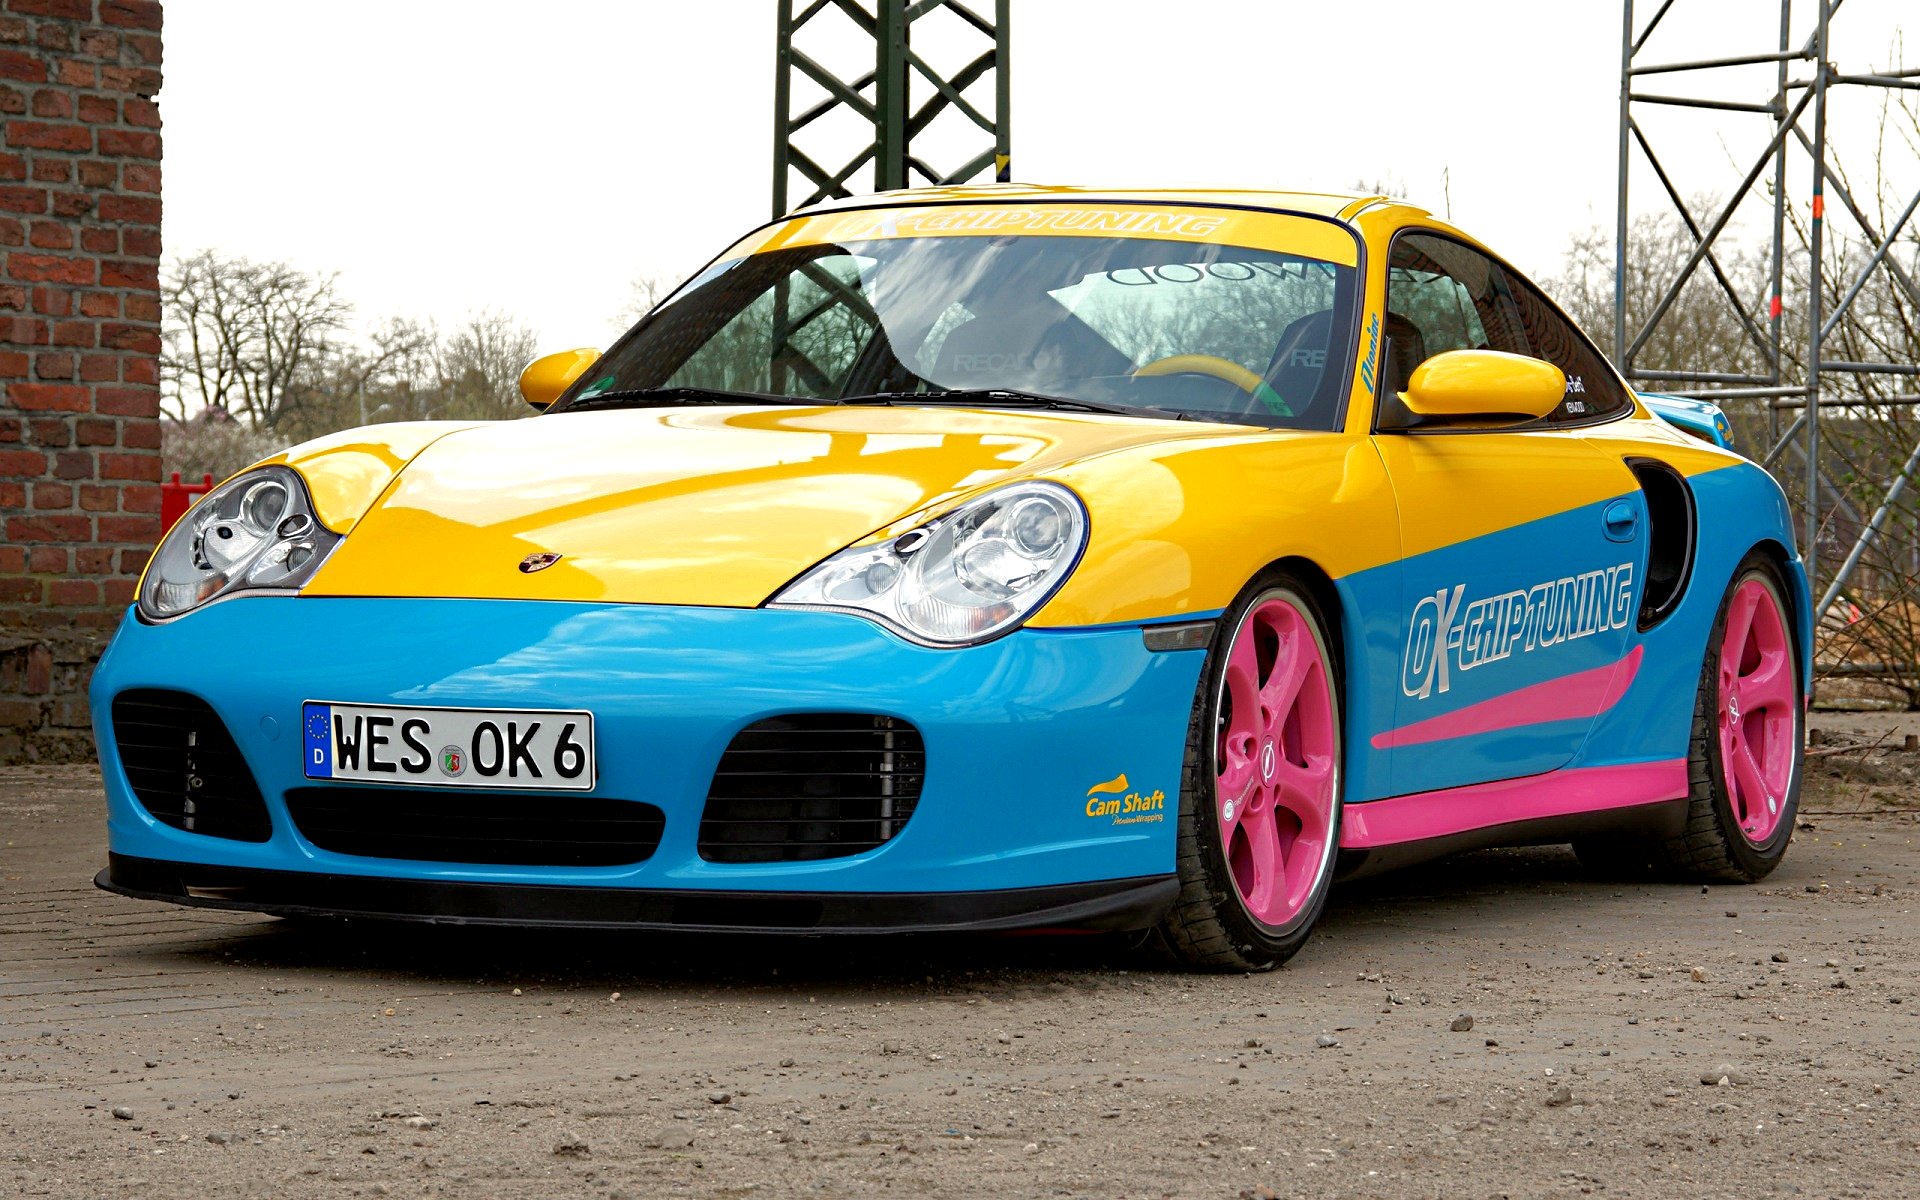 Descargar fondos de escritorio de Porsche 996 HD